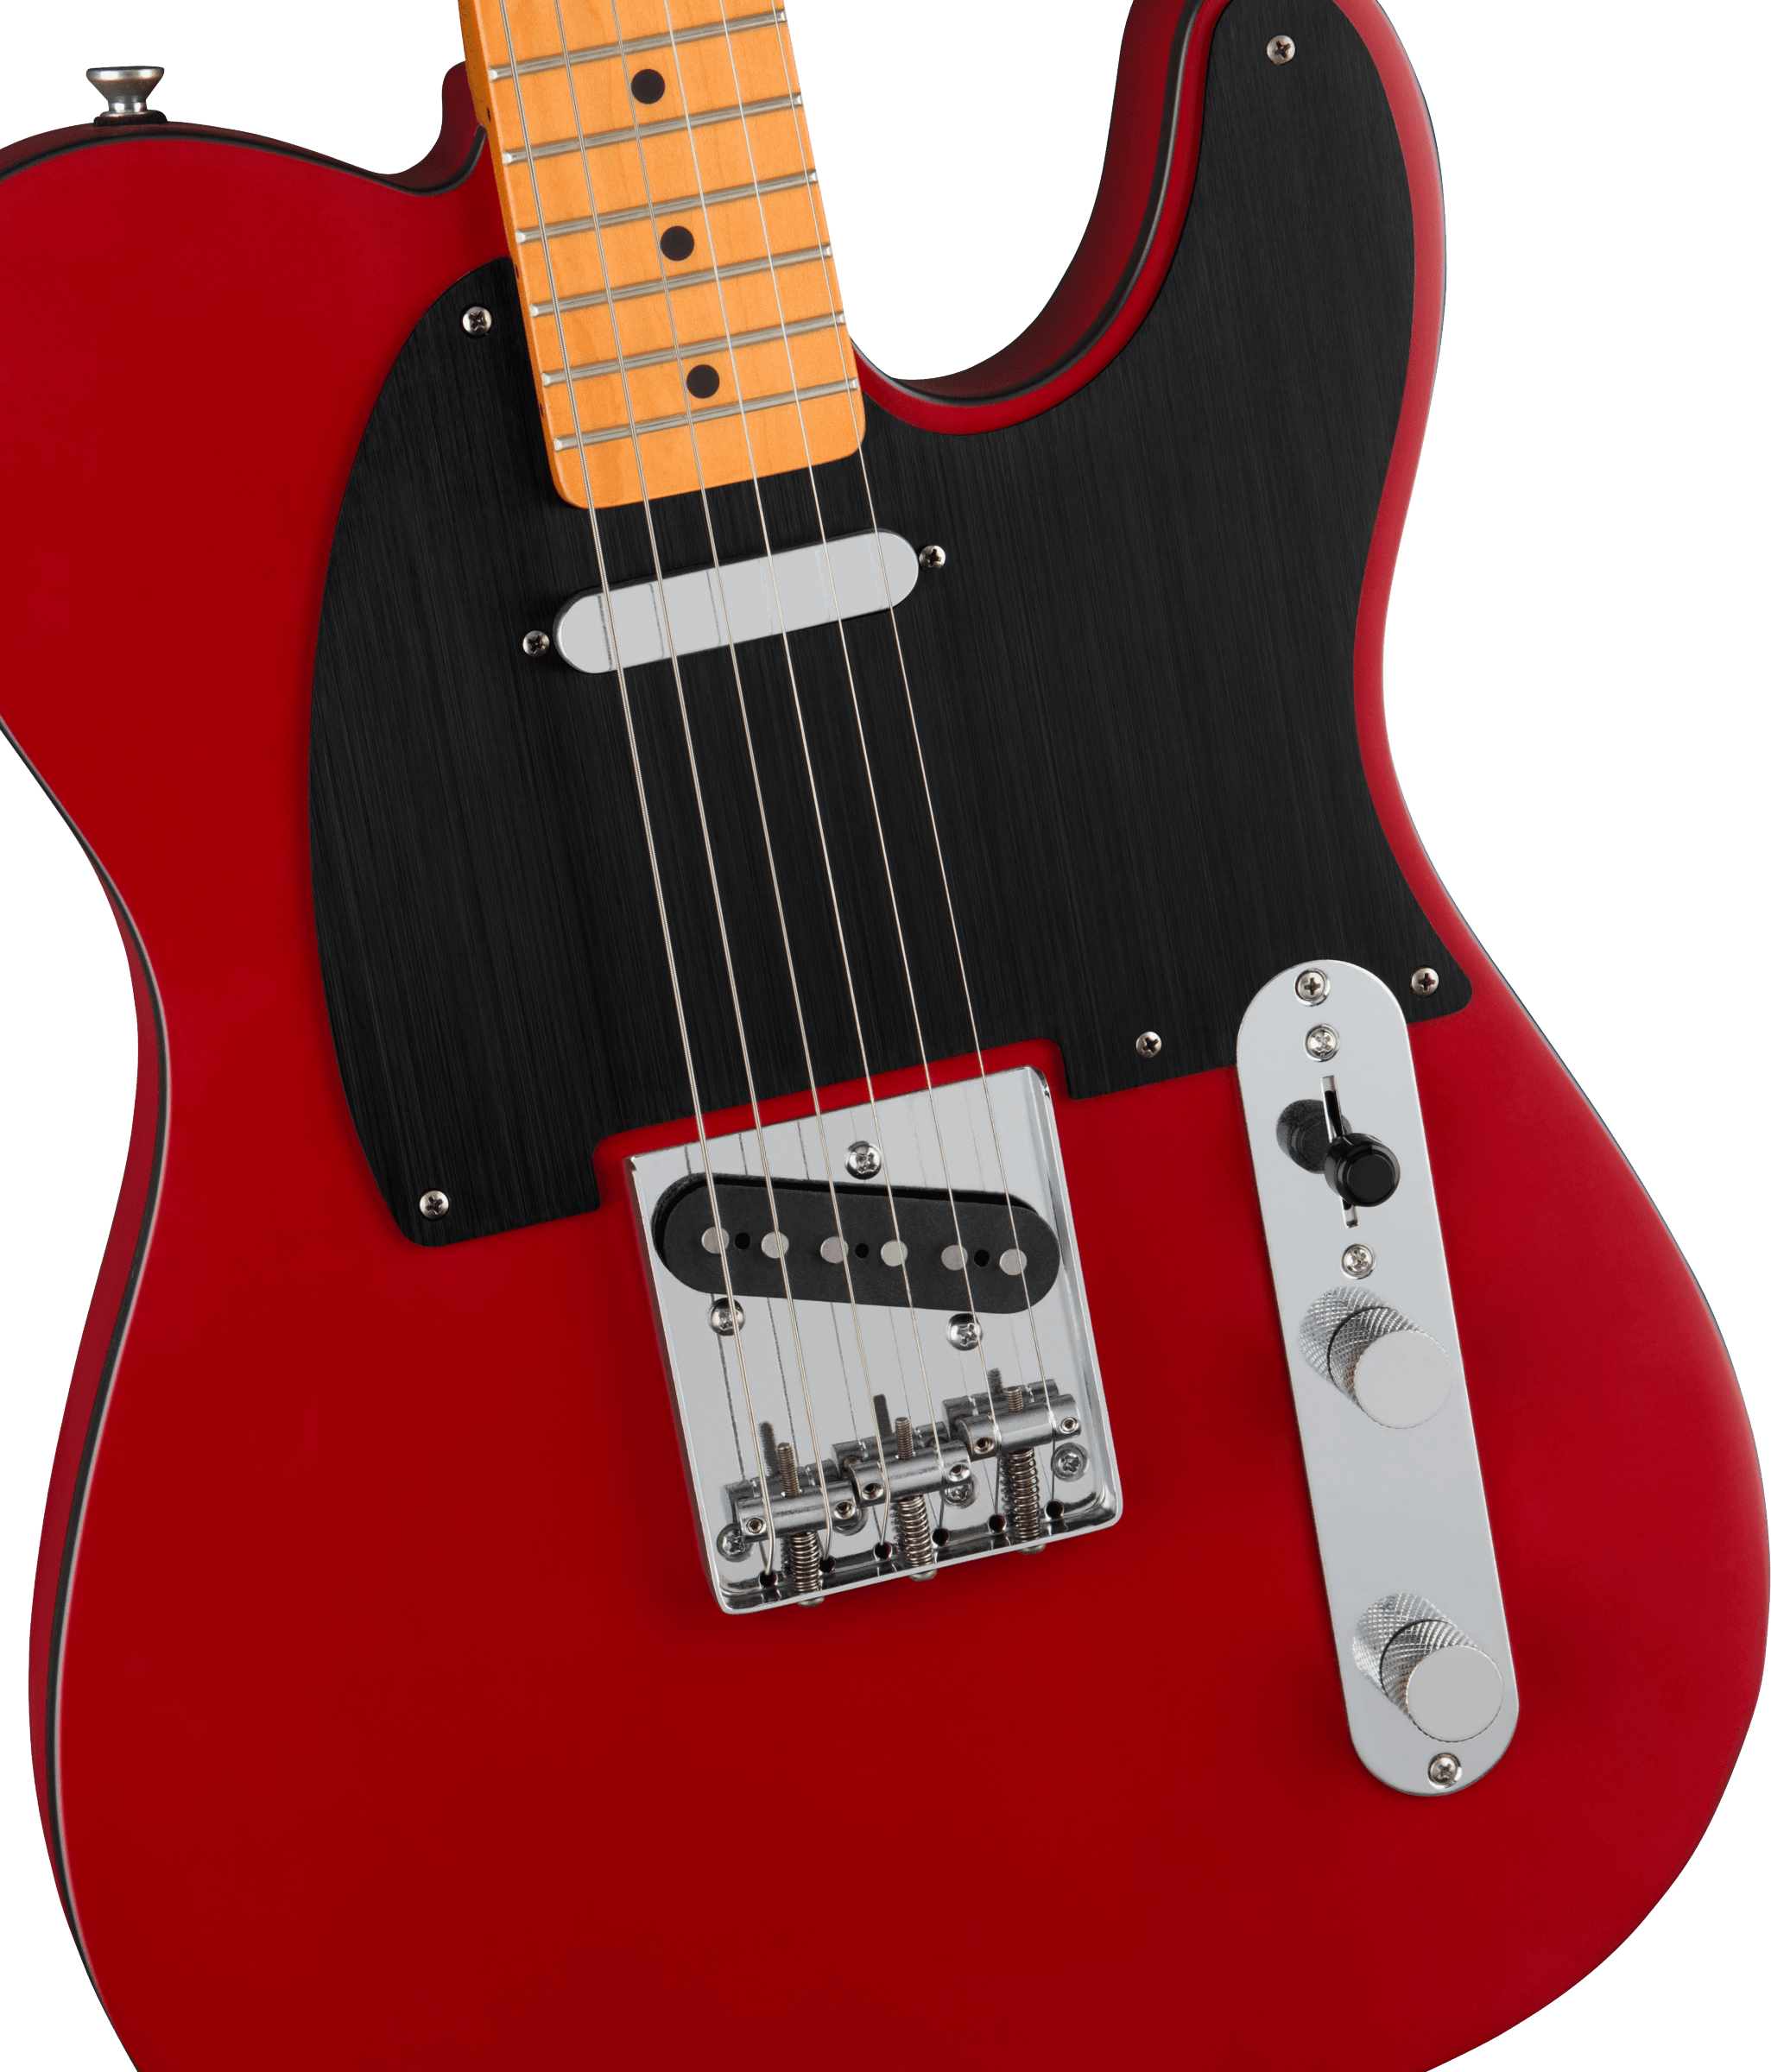 Squier Tele 40th Anniversary Vintage Edition Mn - Satin Dakota Red - Guitarra eléctrica con forma de tel - Variation 2